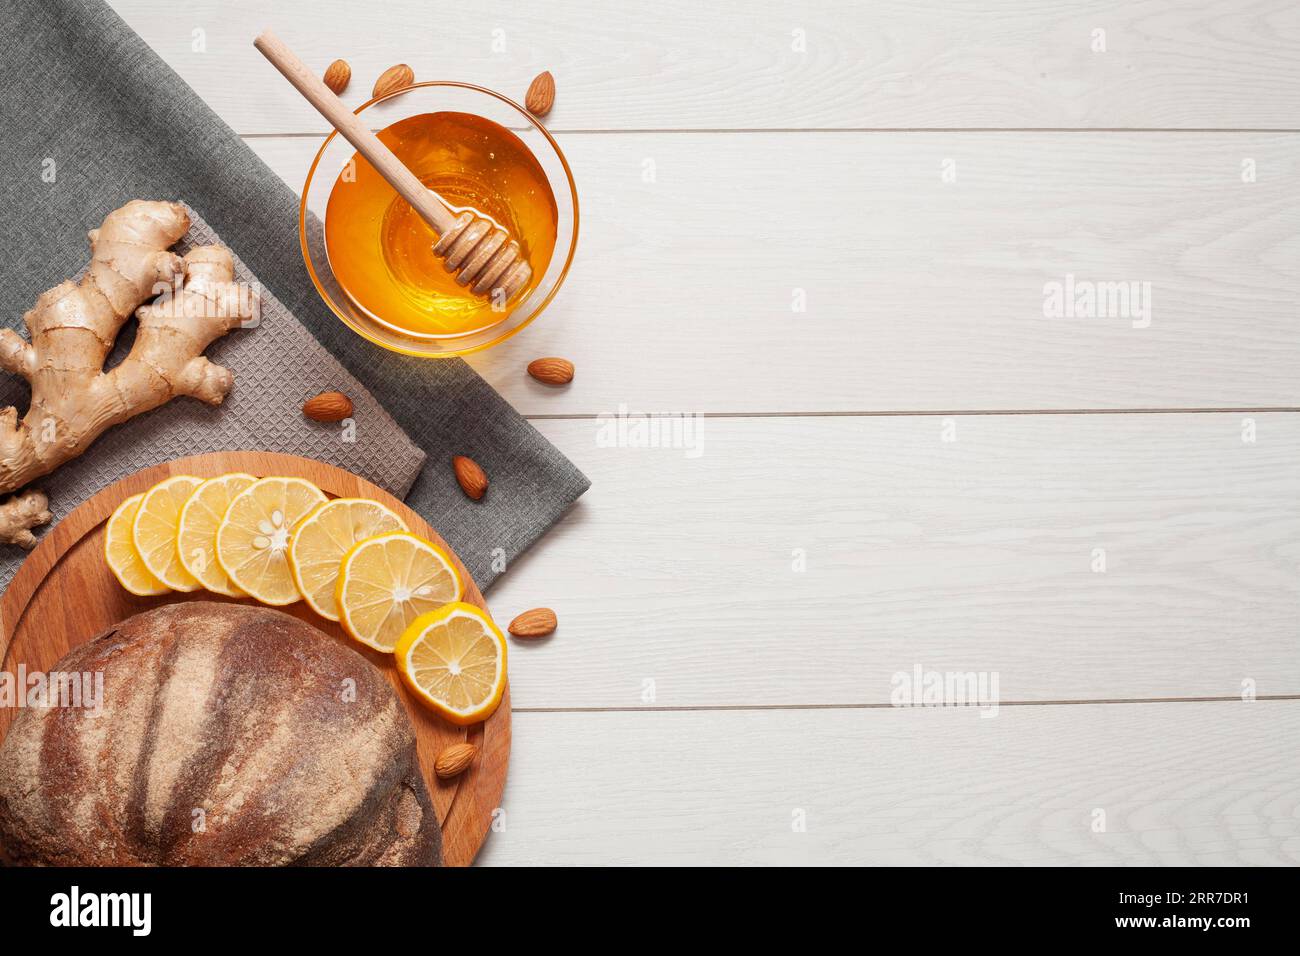 Pan casero con miel de jengibre Foto de stock